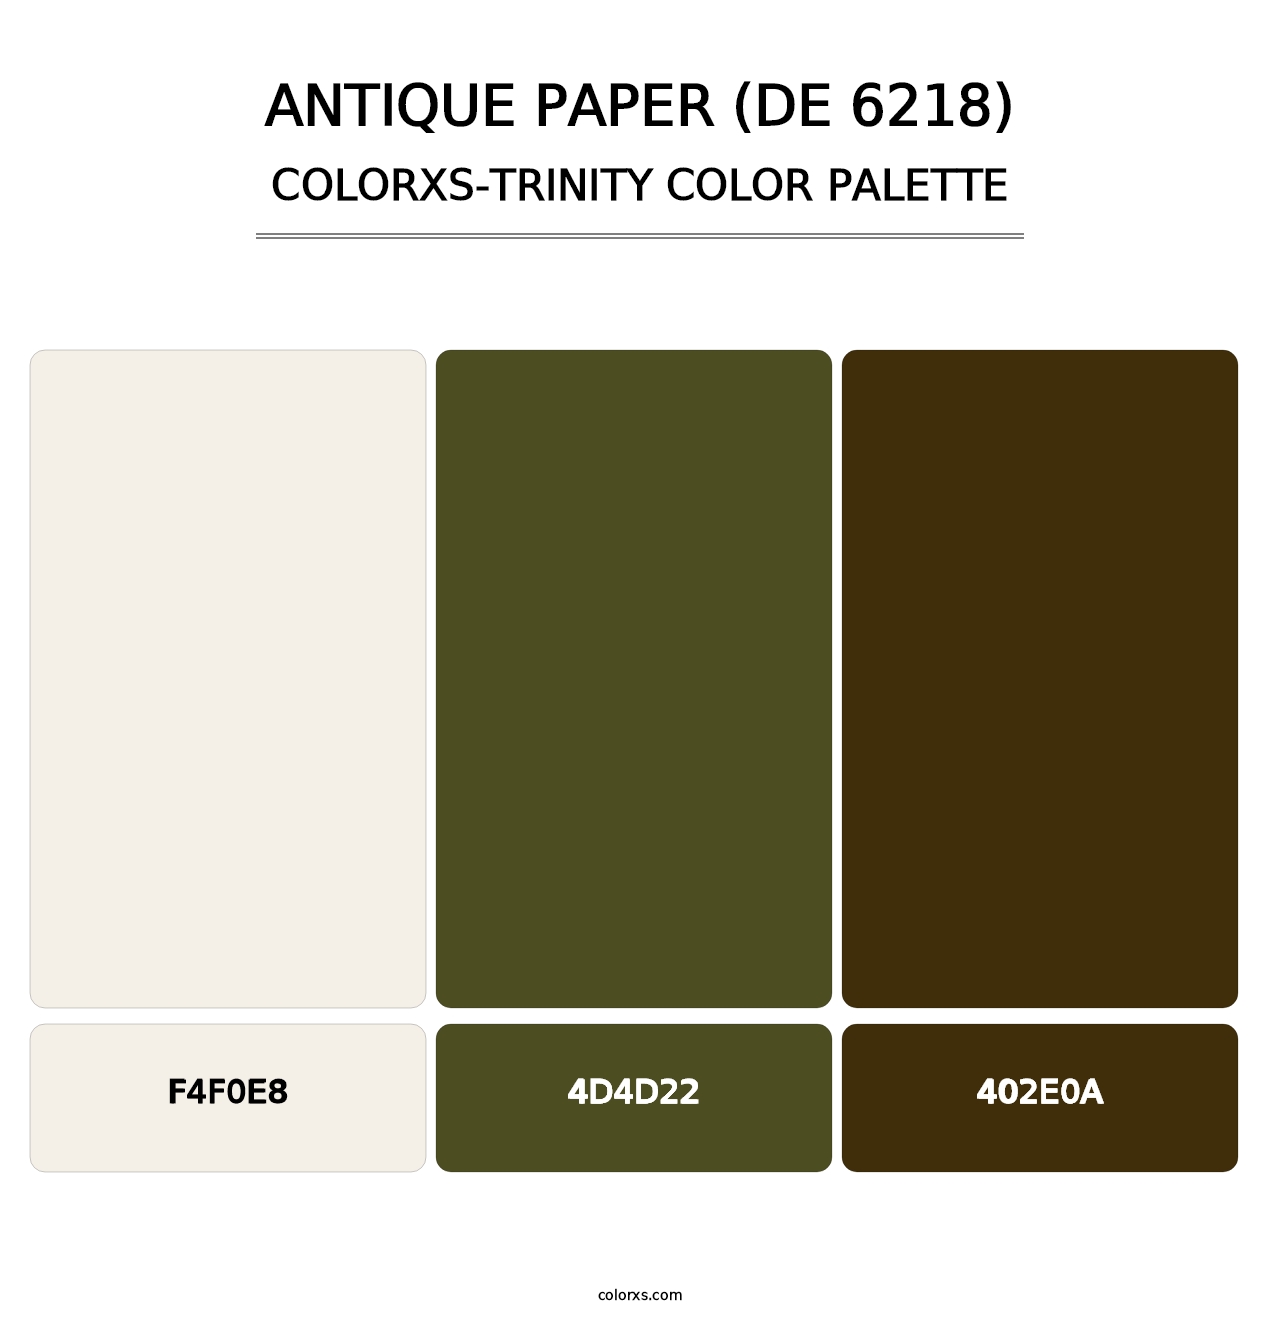 Antique Paper (DE 6218) - Colorxs Trinity Palette